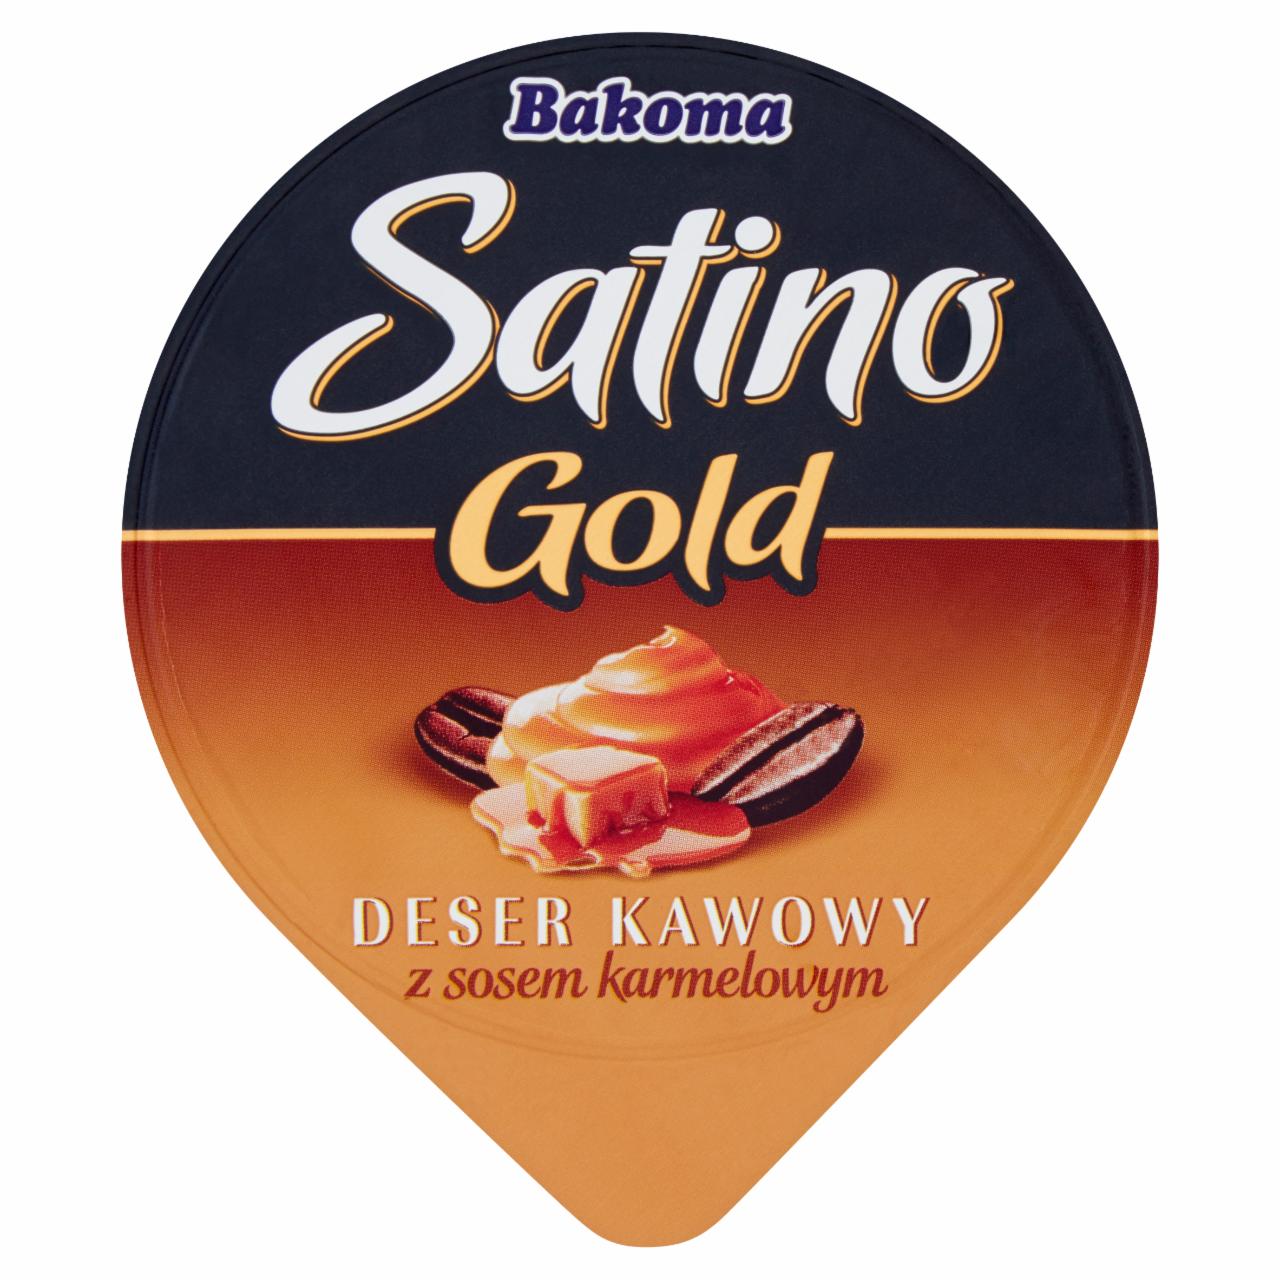 Zdjęcia - Bakoma Satino Gold Deser kawowy z sosem o smaku karmelowym 135 g